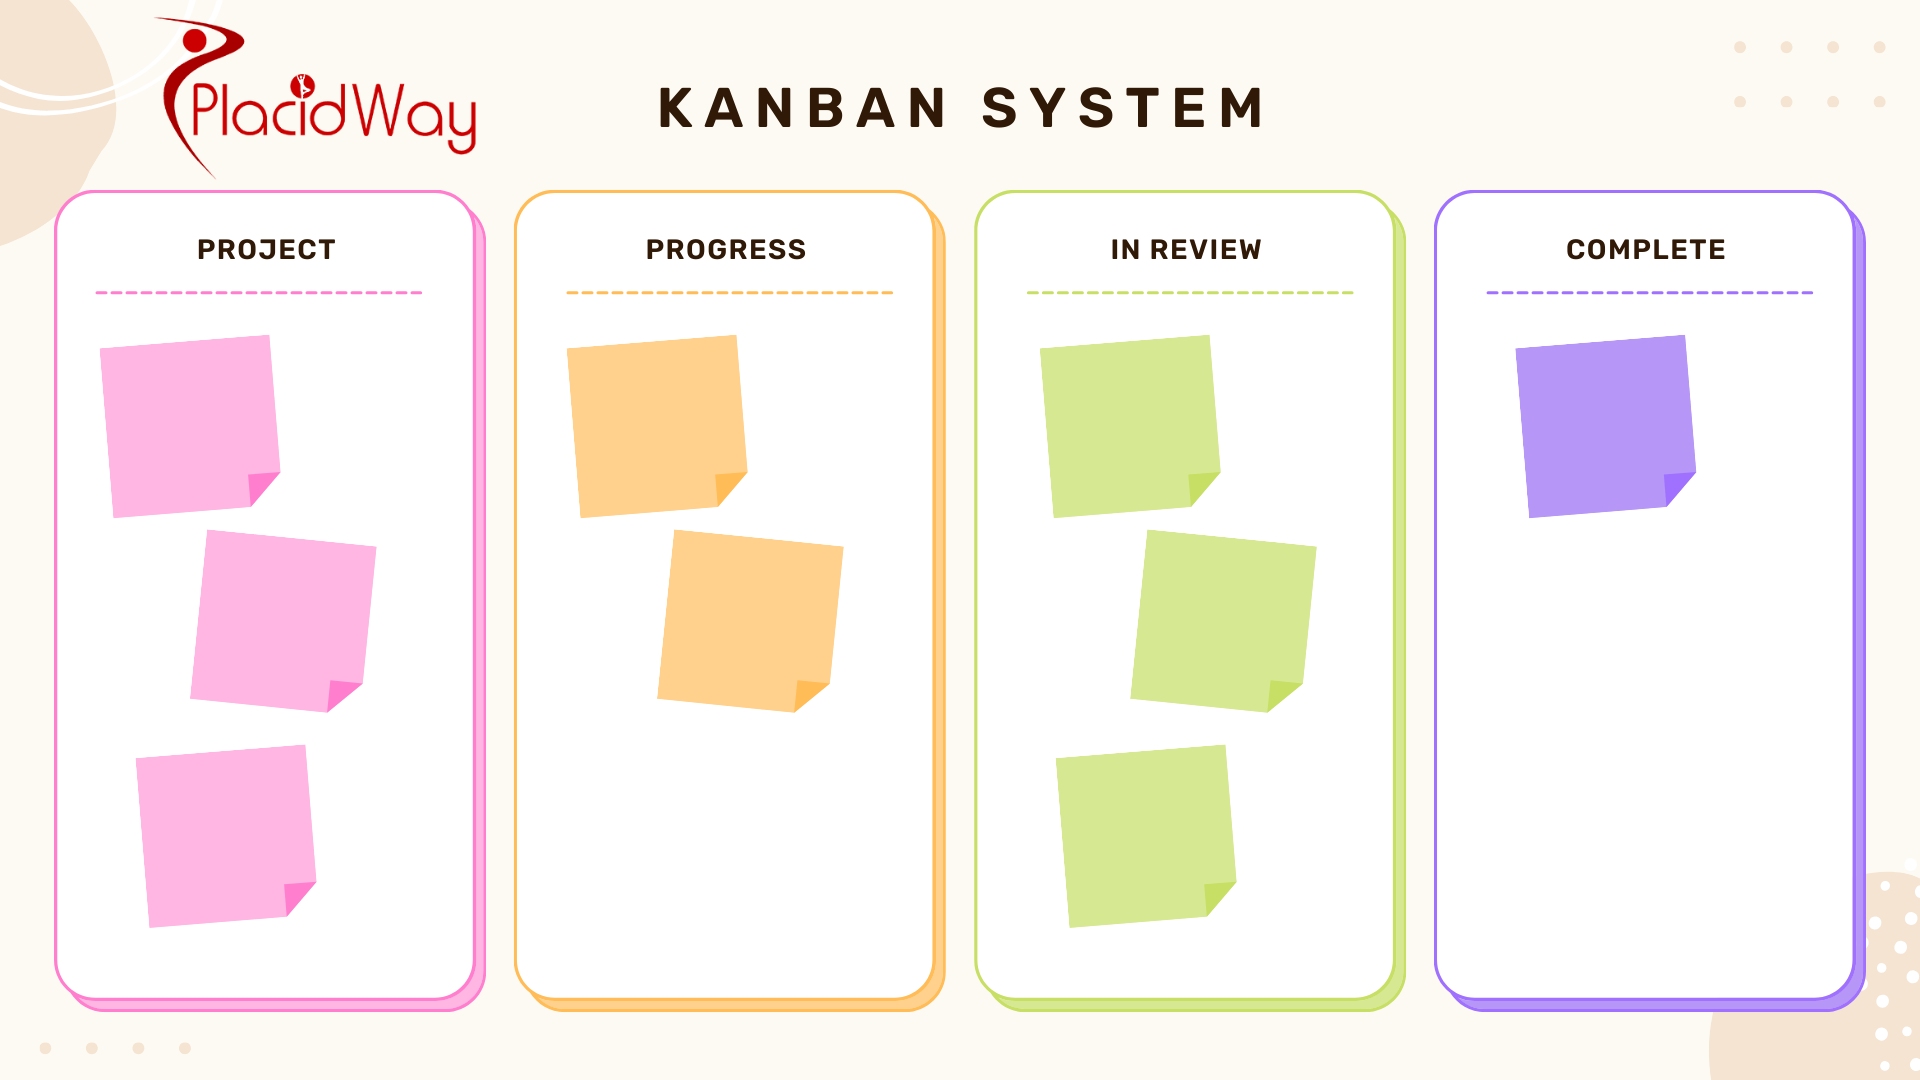 Kanban System